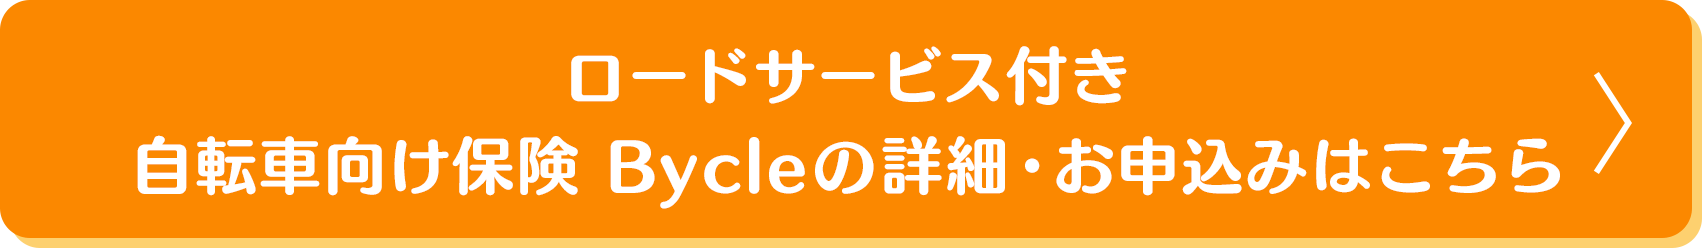 自転車向け保険Bycleの詳細・お申込み